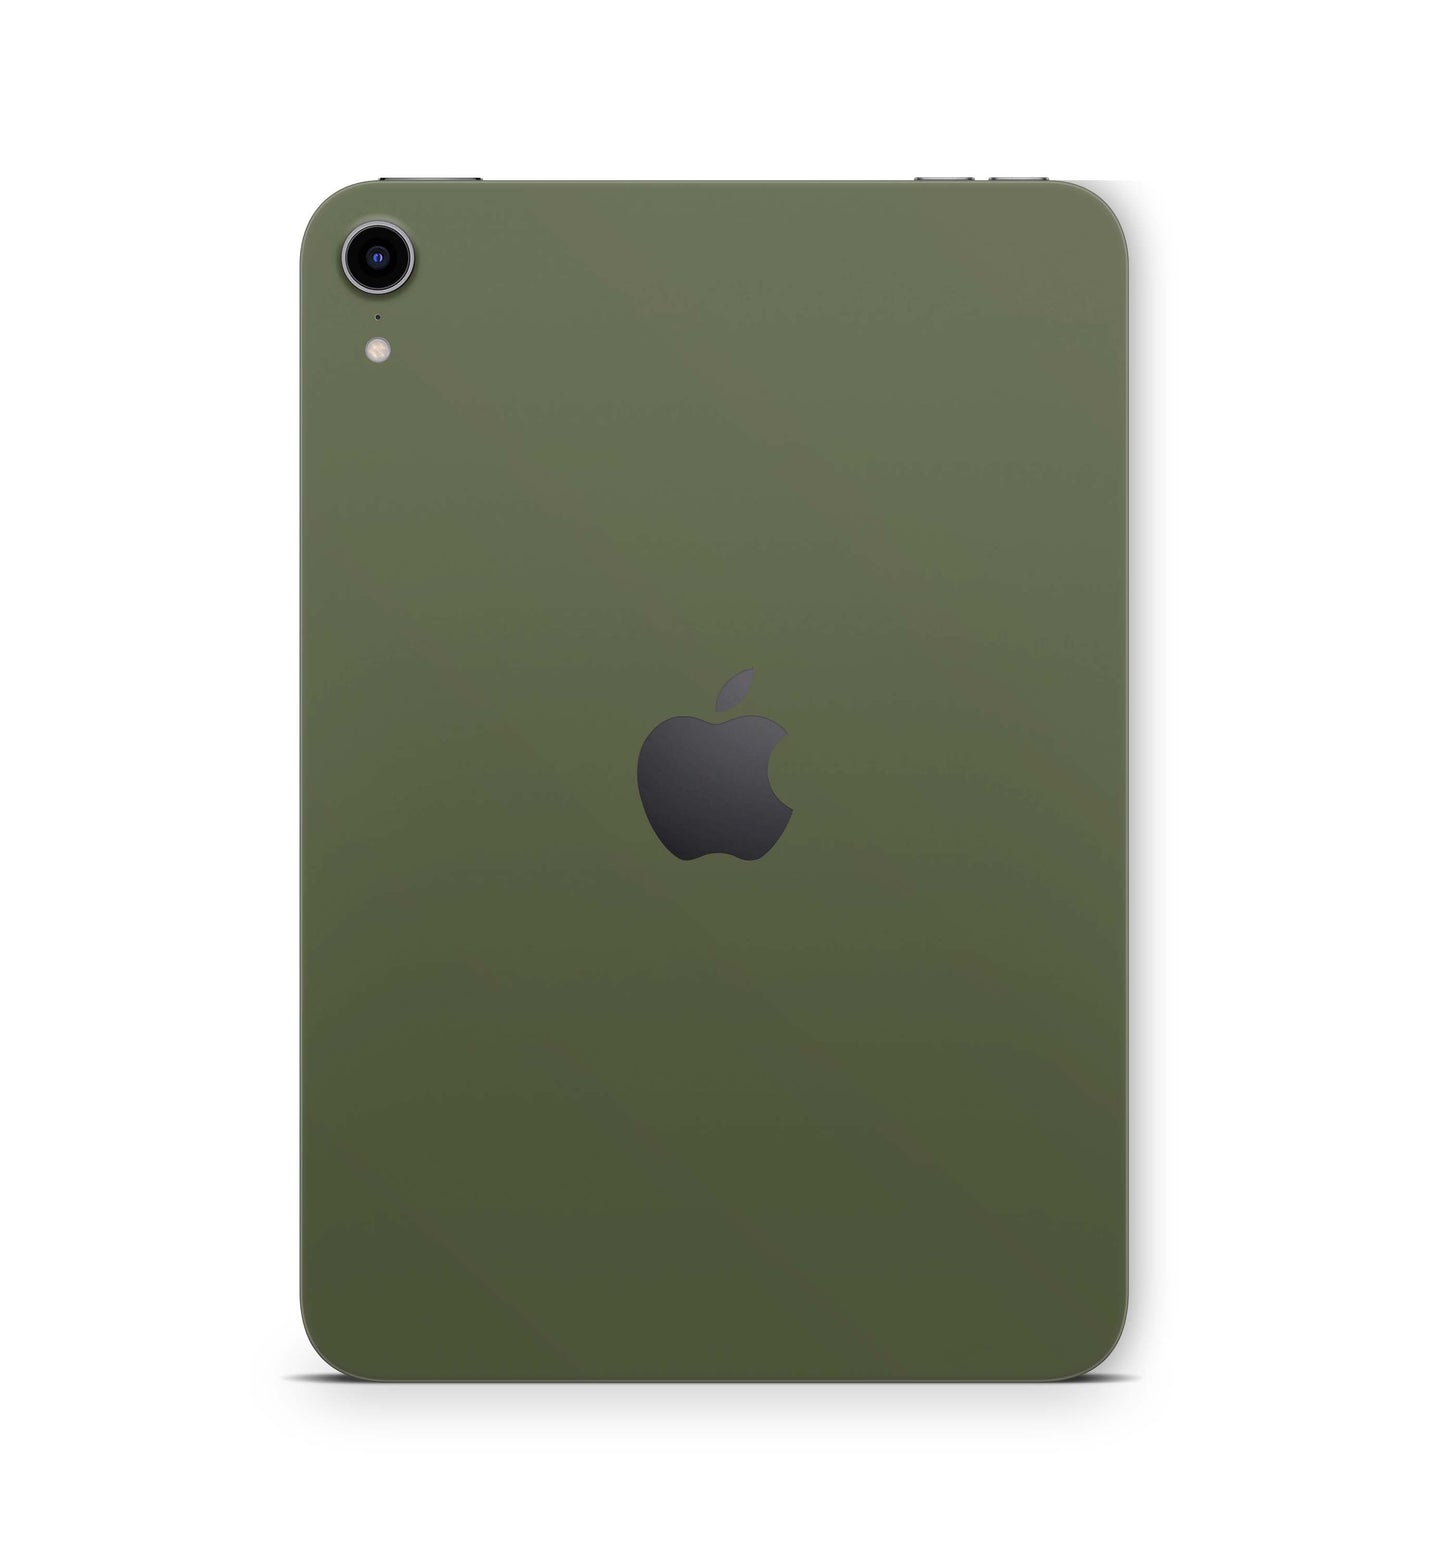 Apple iPad Skin Design Cover Folie Vinyl Skins & Wraps für alle iPad Modelle Aufkleber Skins4u Solid-state-olive  